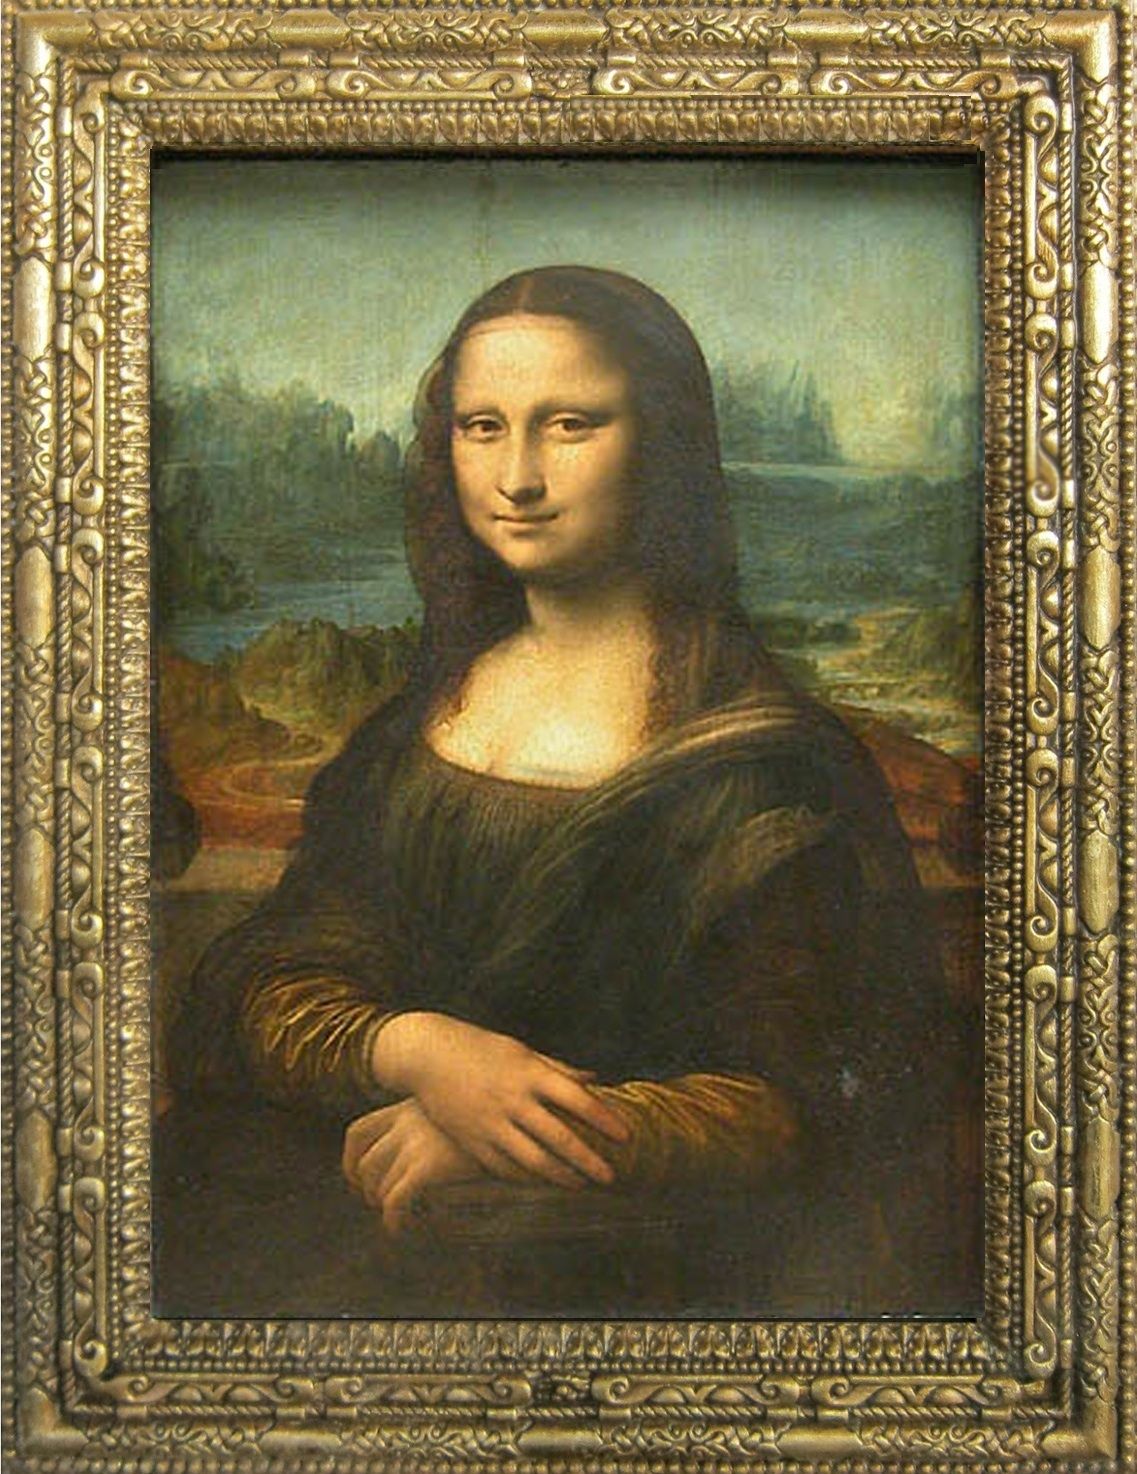 Bạn có biết rằng Leonardo da Vinci đã vẽ Mona Lisa với tình yêu và tâm hồn sáng tạo không ngừng? Hãy xem bức tranh cổ điển này và khám phá những chi tiết đầy bí ẩn và tầm quan trọng của nó.